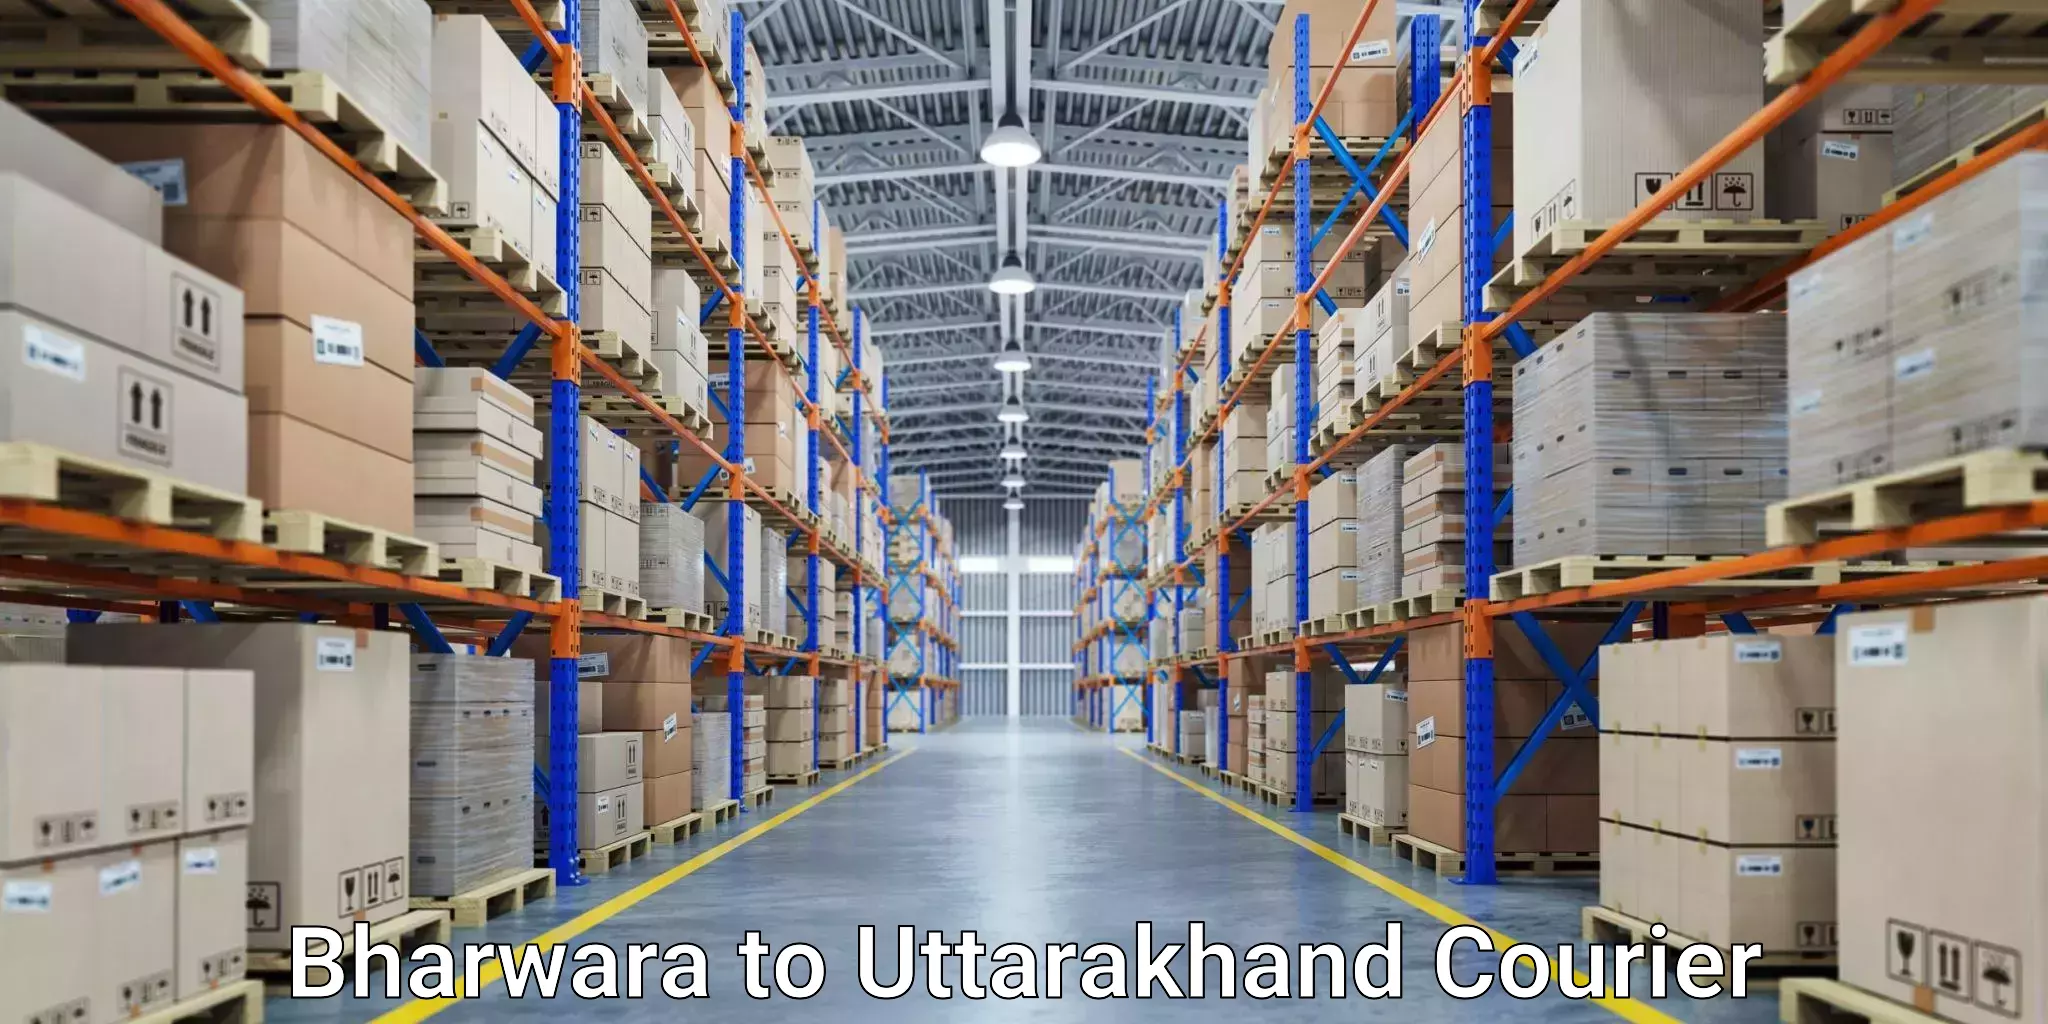 Nationwide parcel services Bharwara to Tehri